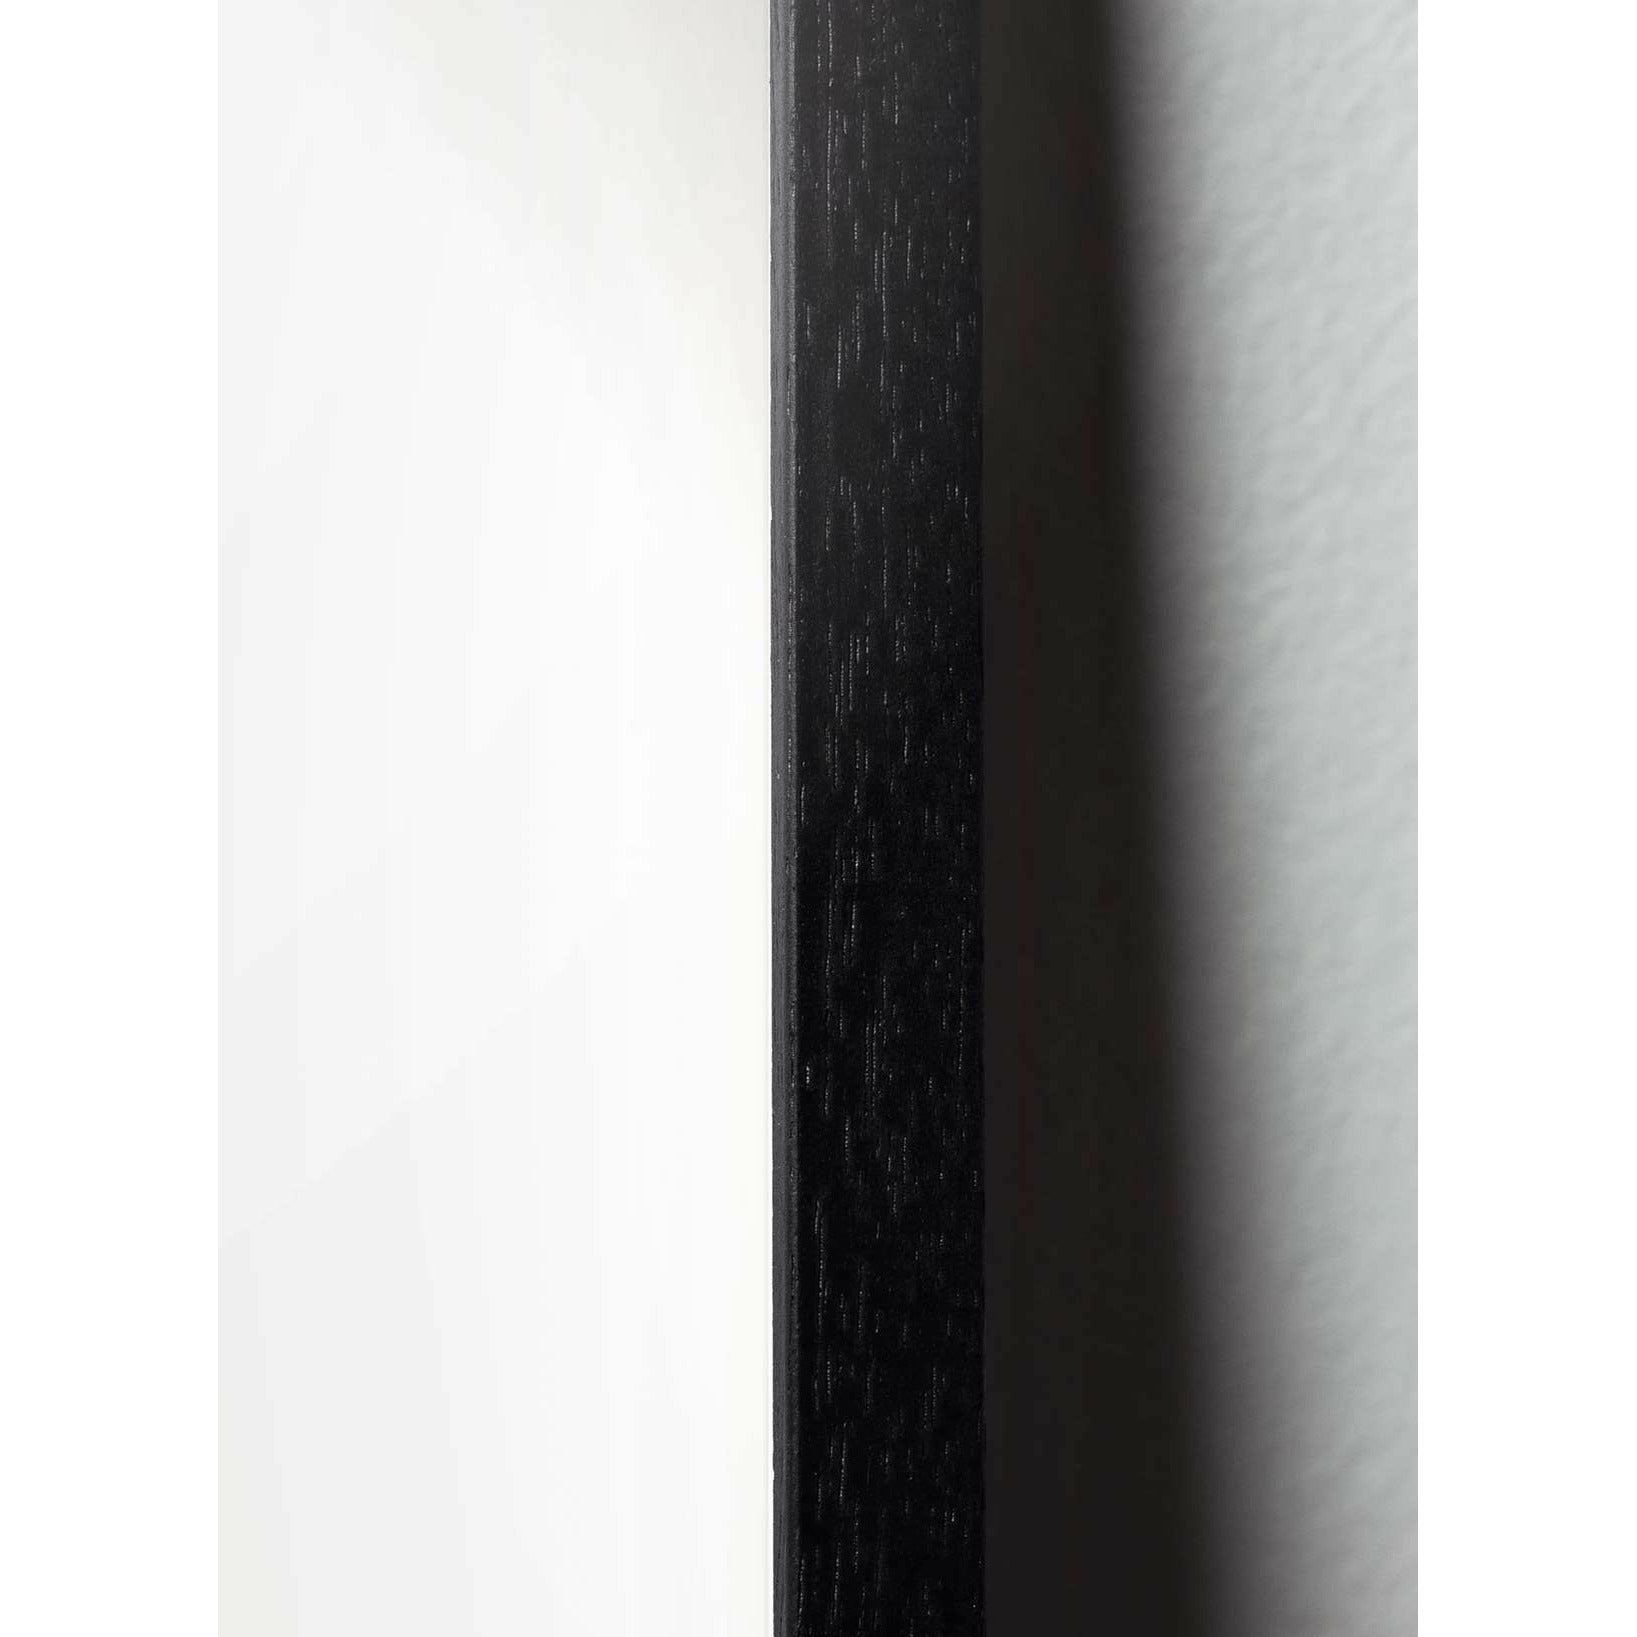 brainchild Munakuvioiden juliste, mustasta lakatusta puusta valmistettu runko, ruskea